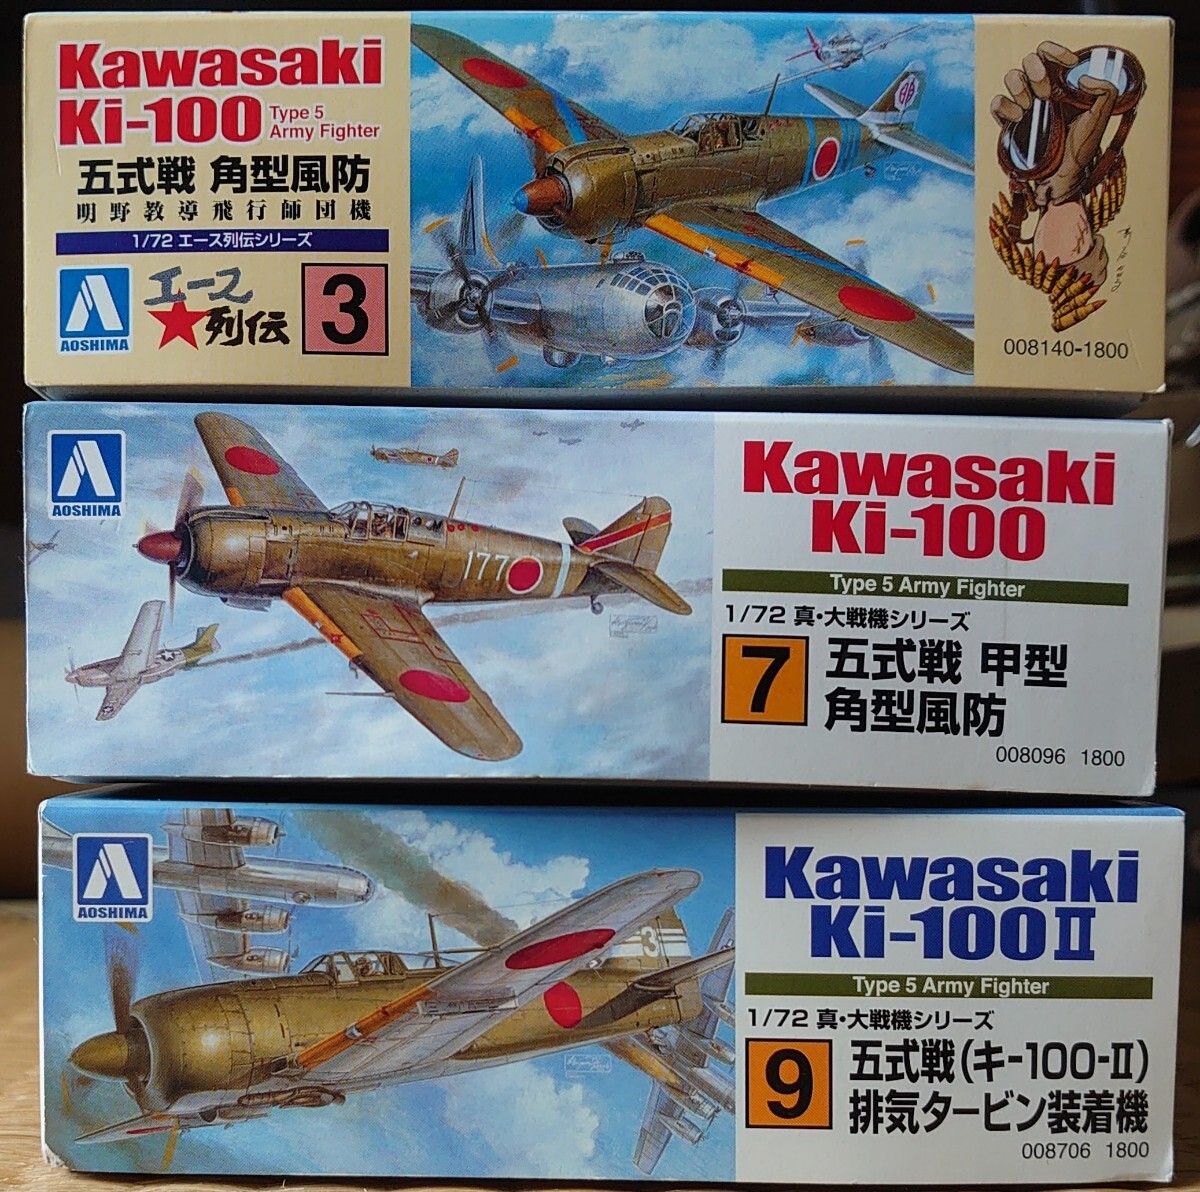 アオシマ 1/72 大日本帝国陸軍 川崎 キ-100 五式戦闘機(角型風防)/'エース列伝' / キ-100-Ⅱ 五式戦闘機Ⅱ型 排気タービン装着機 計3機の画像2